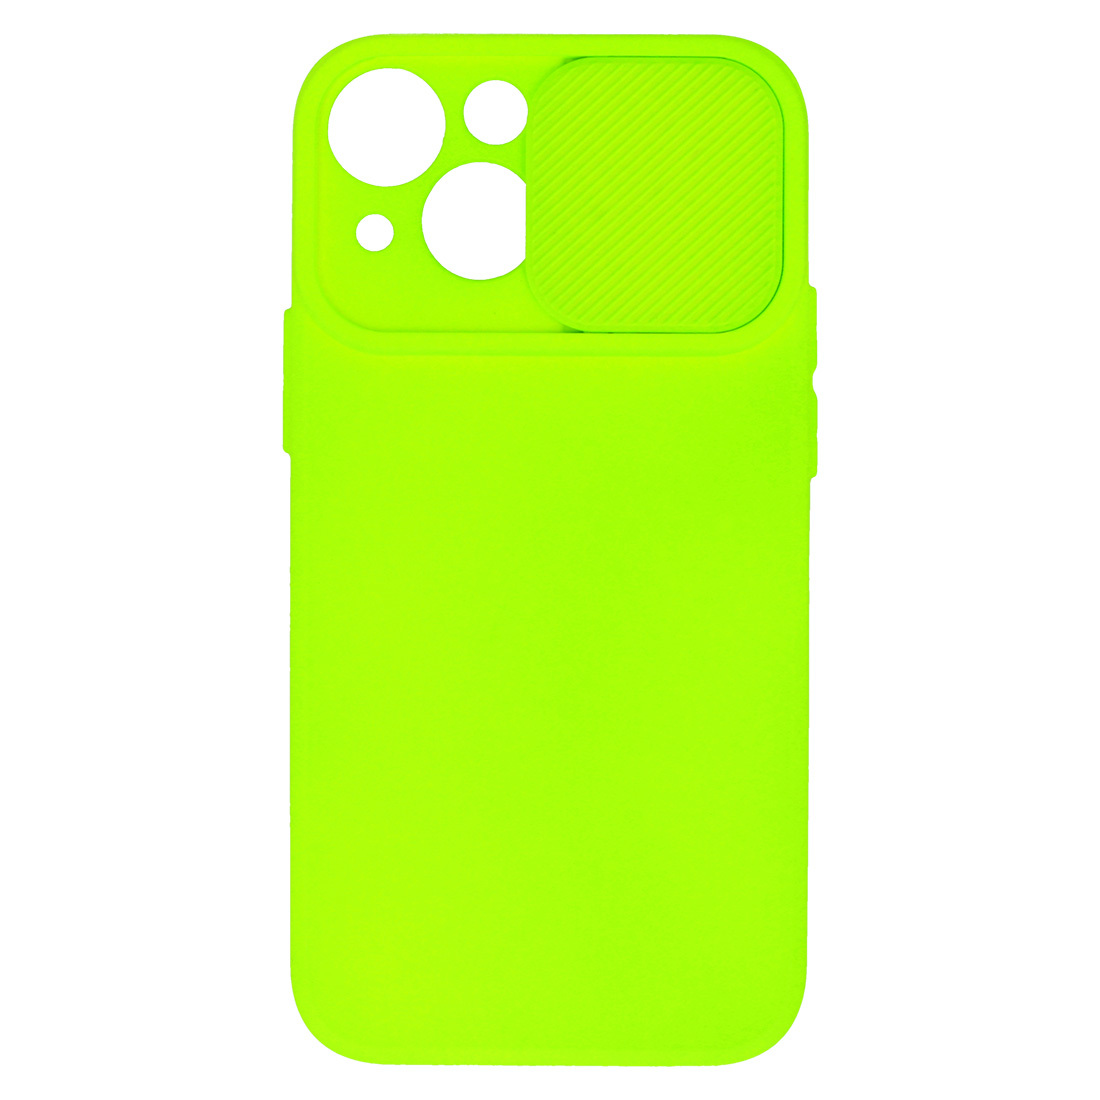 Pokrowiec etui z elastycznego TPU Camshield Soft Case limonkowe APPLE iPhone 11 Pro Max / 4